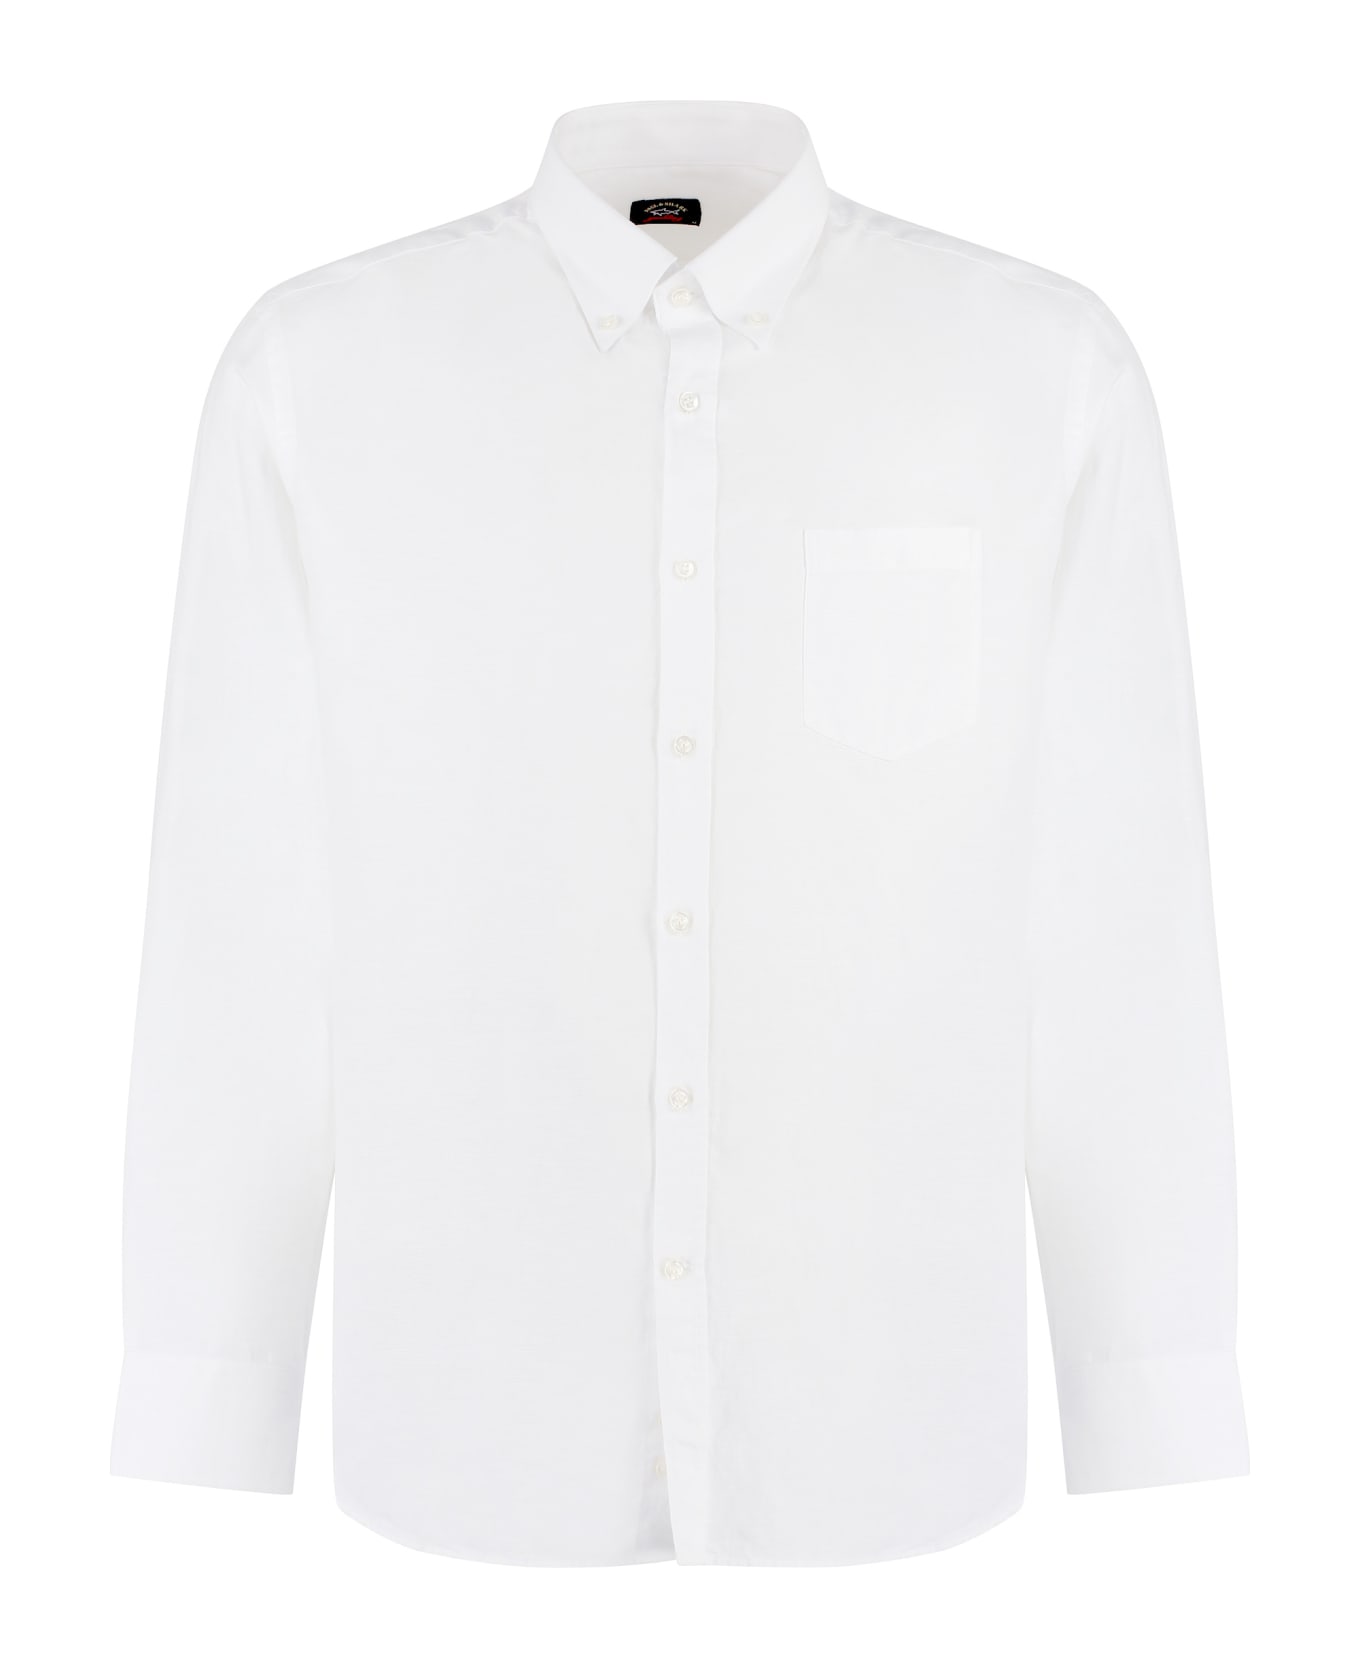 Paul&Shark Long Sleeve Cotton Blend Shirt - White